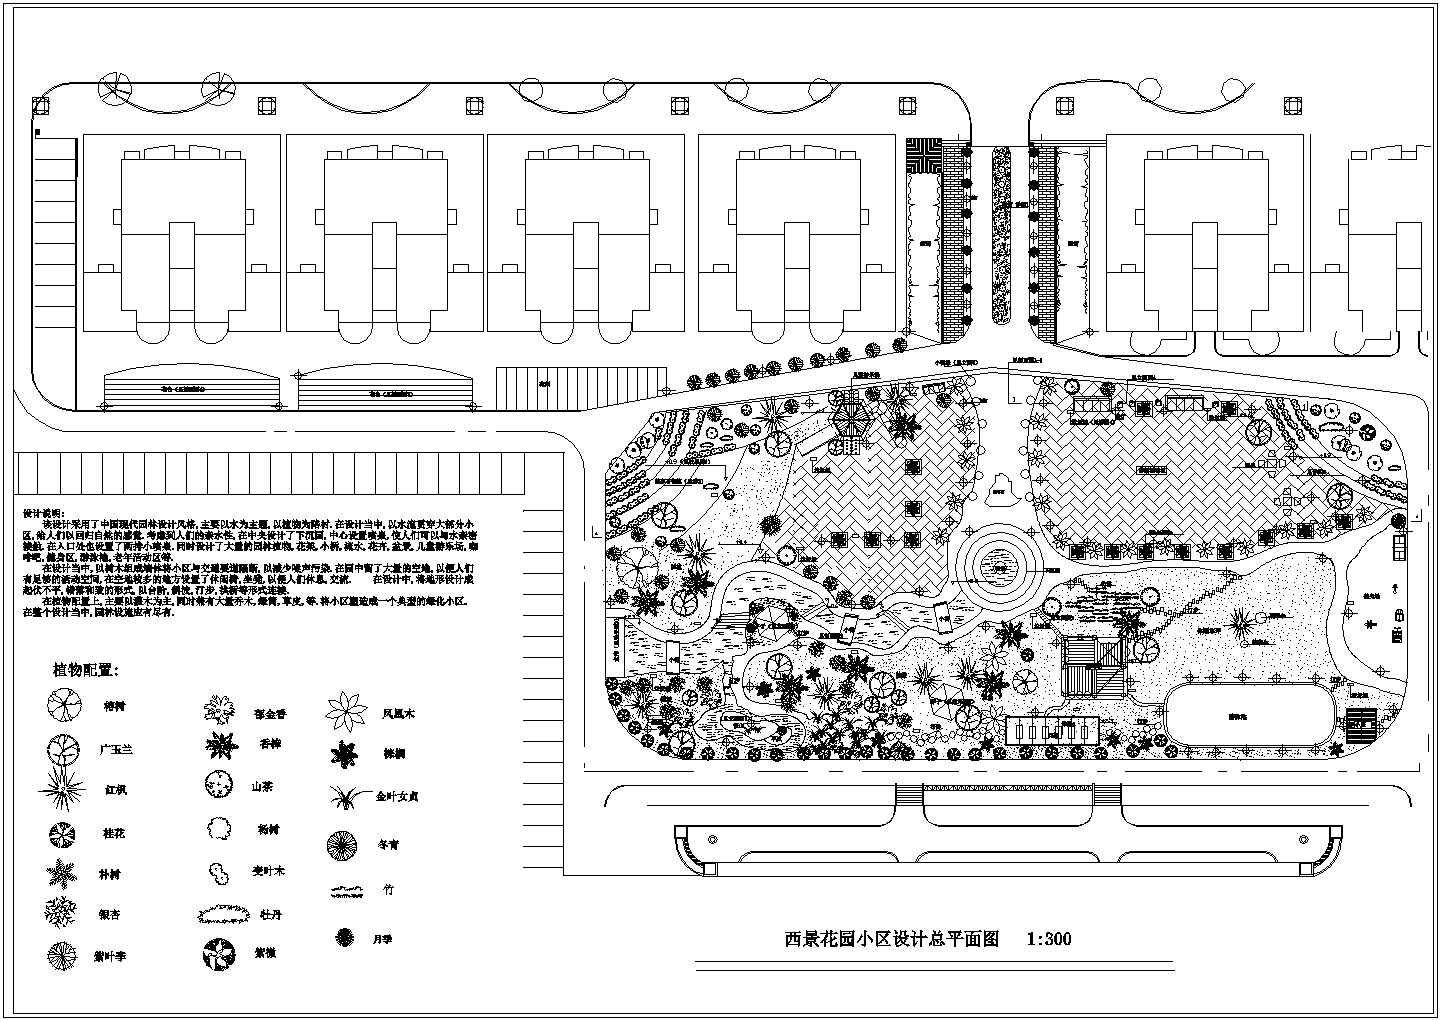 西景花园小区环境设计施工图CAD